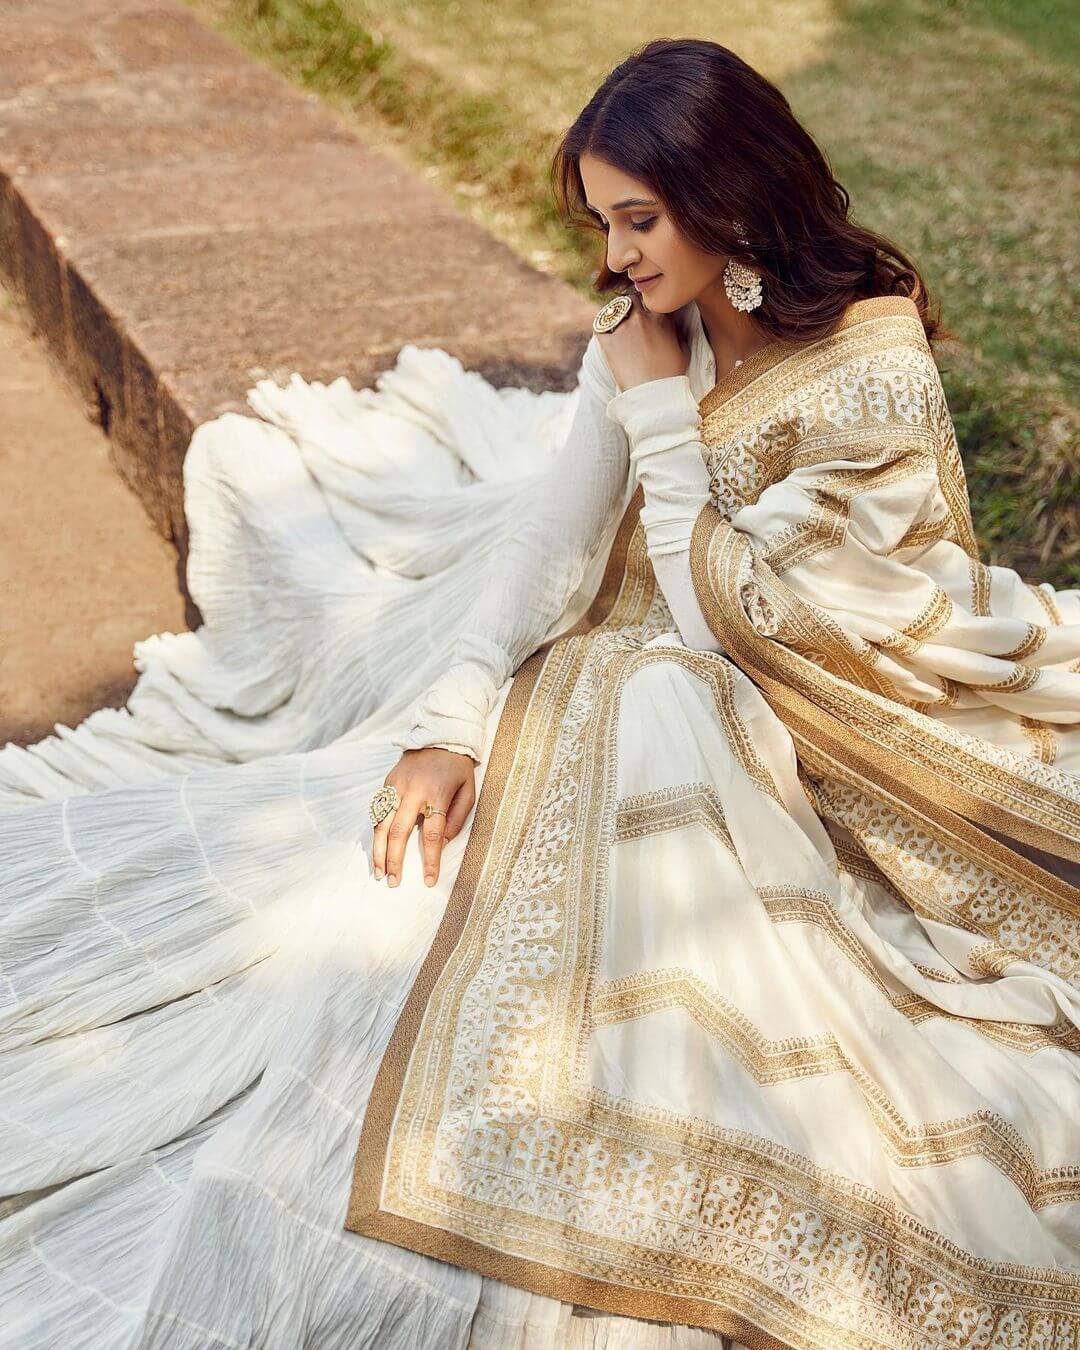 Shakti Mohan Royal Vintage White Suit With Golden Dupatta